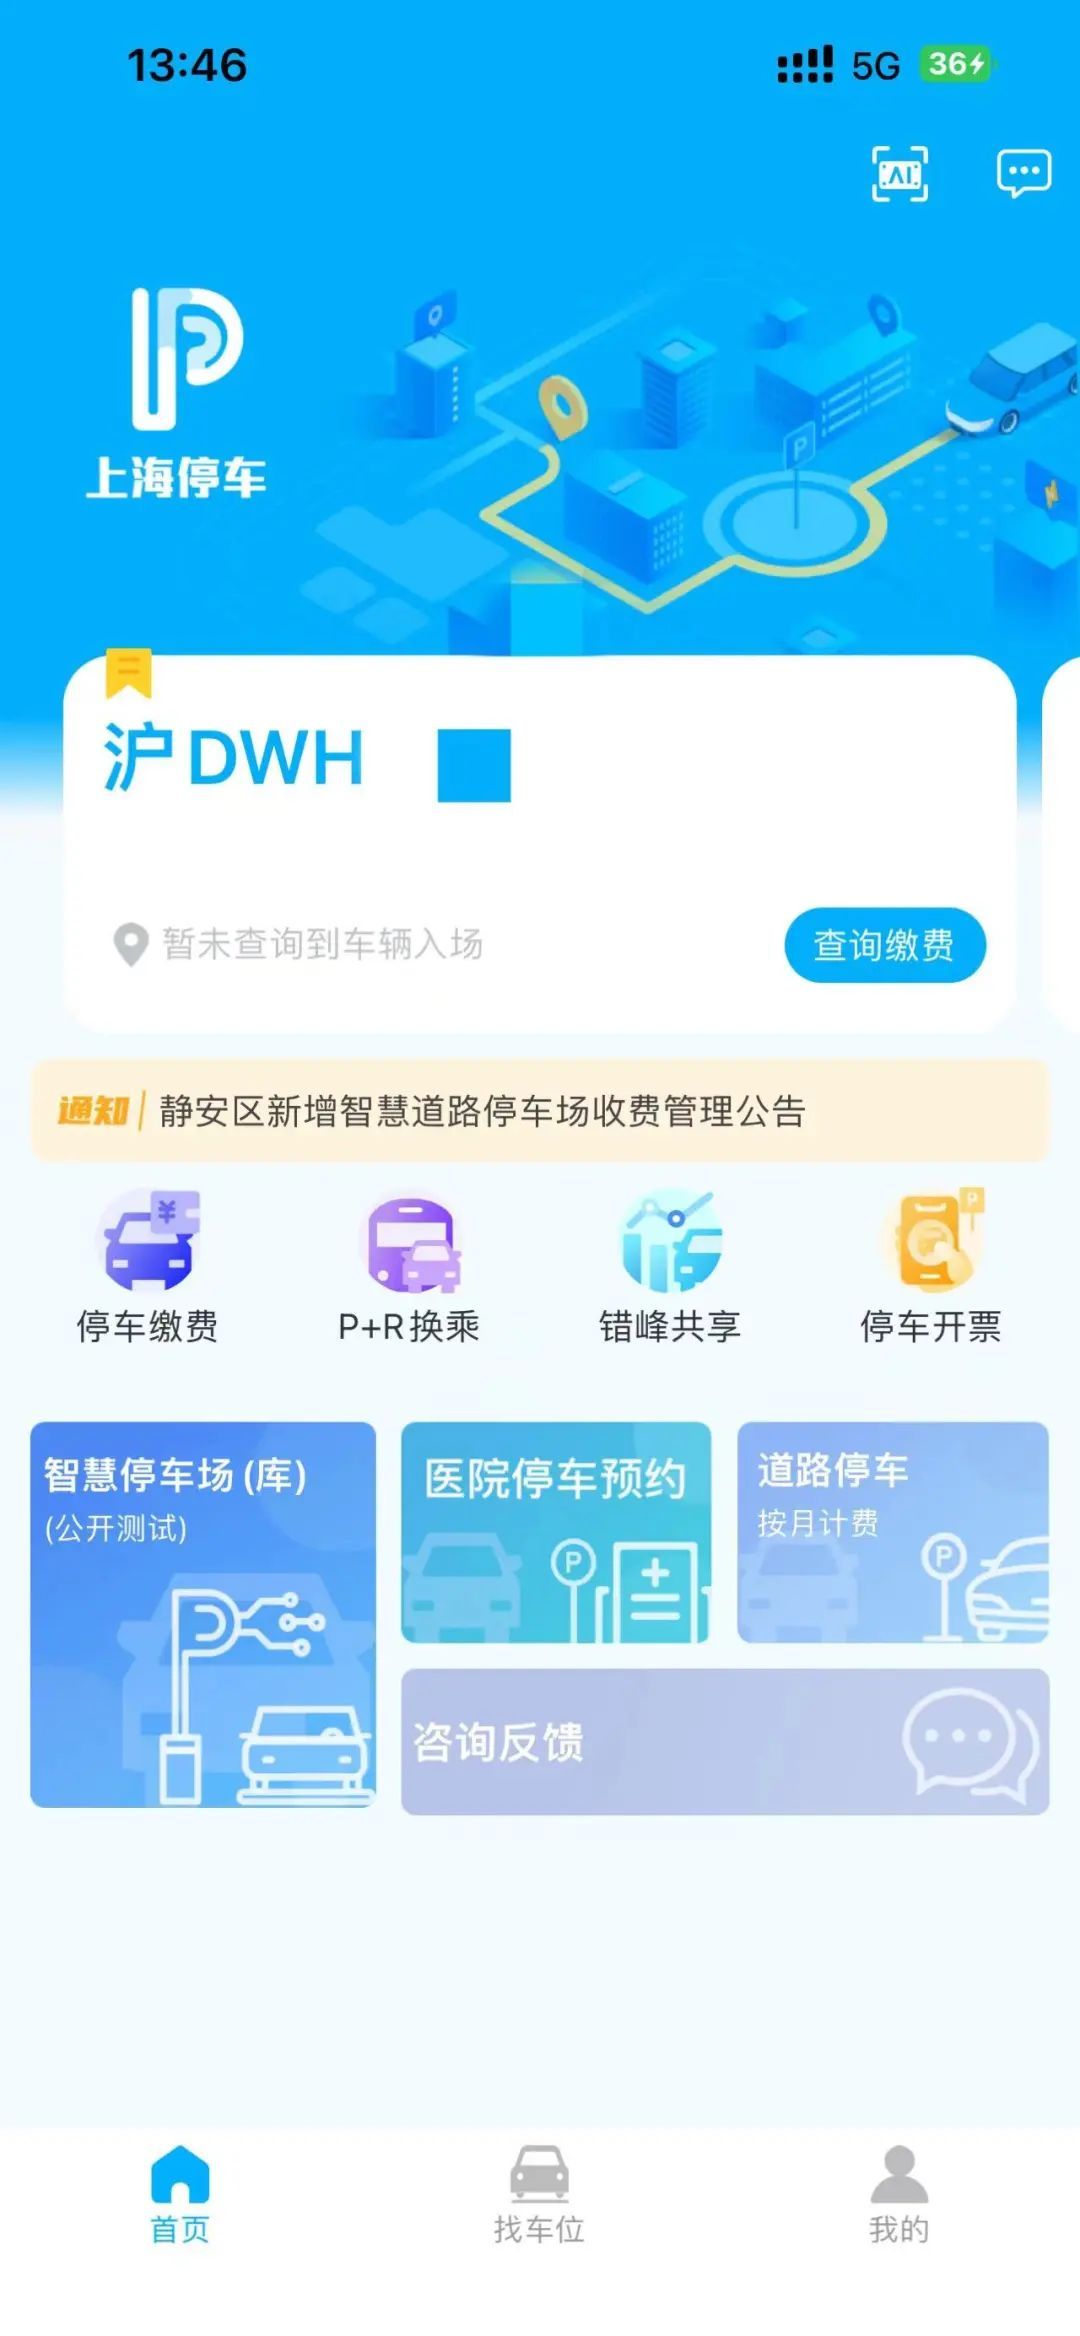 打开上海停车app,点击智慧停车场(库)即可进入查询页面